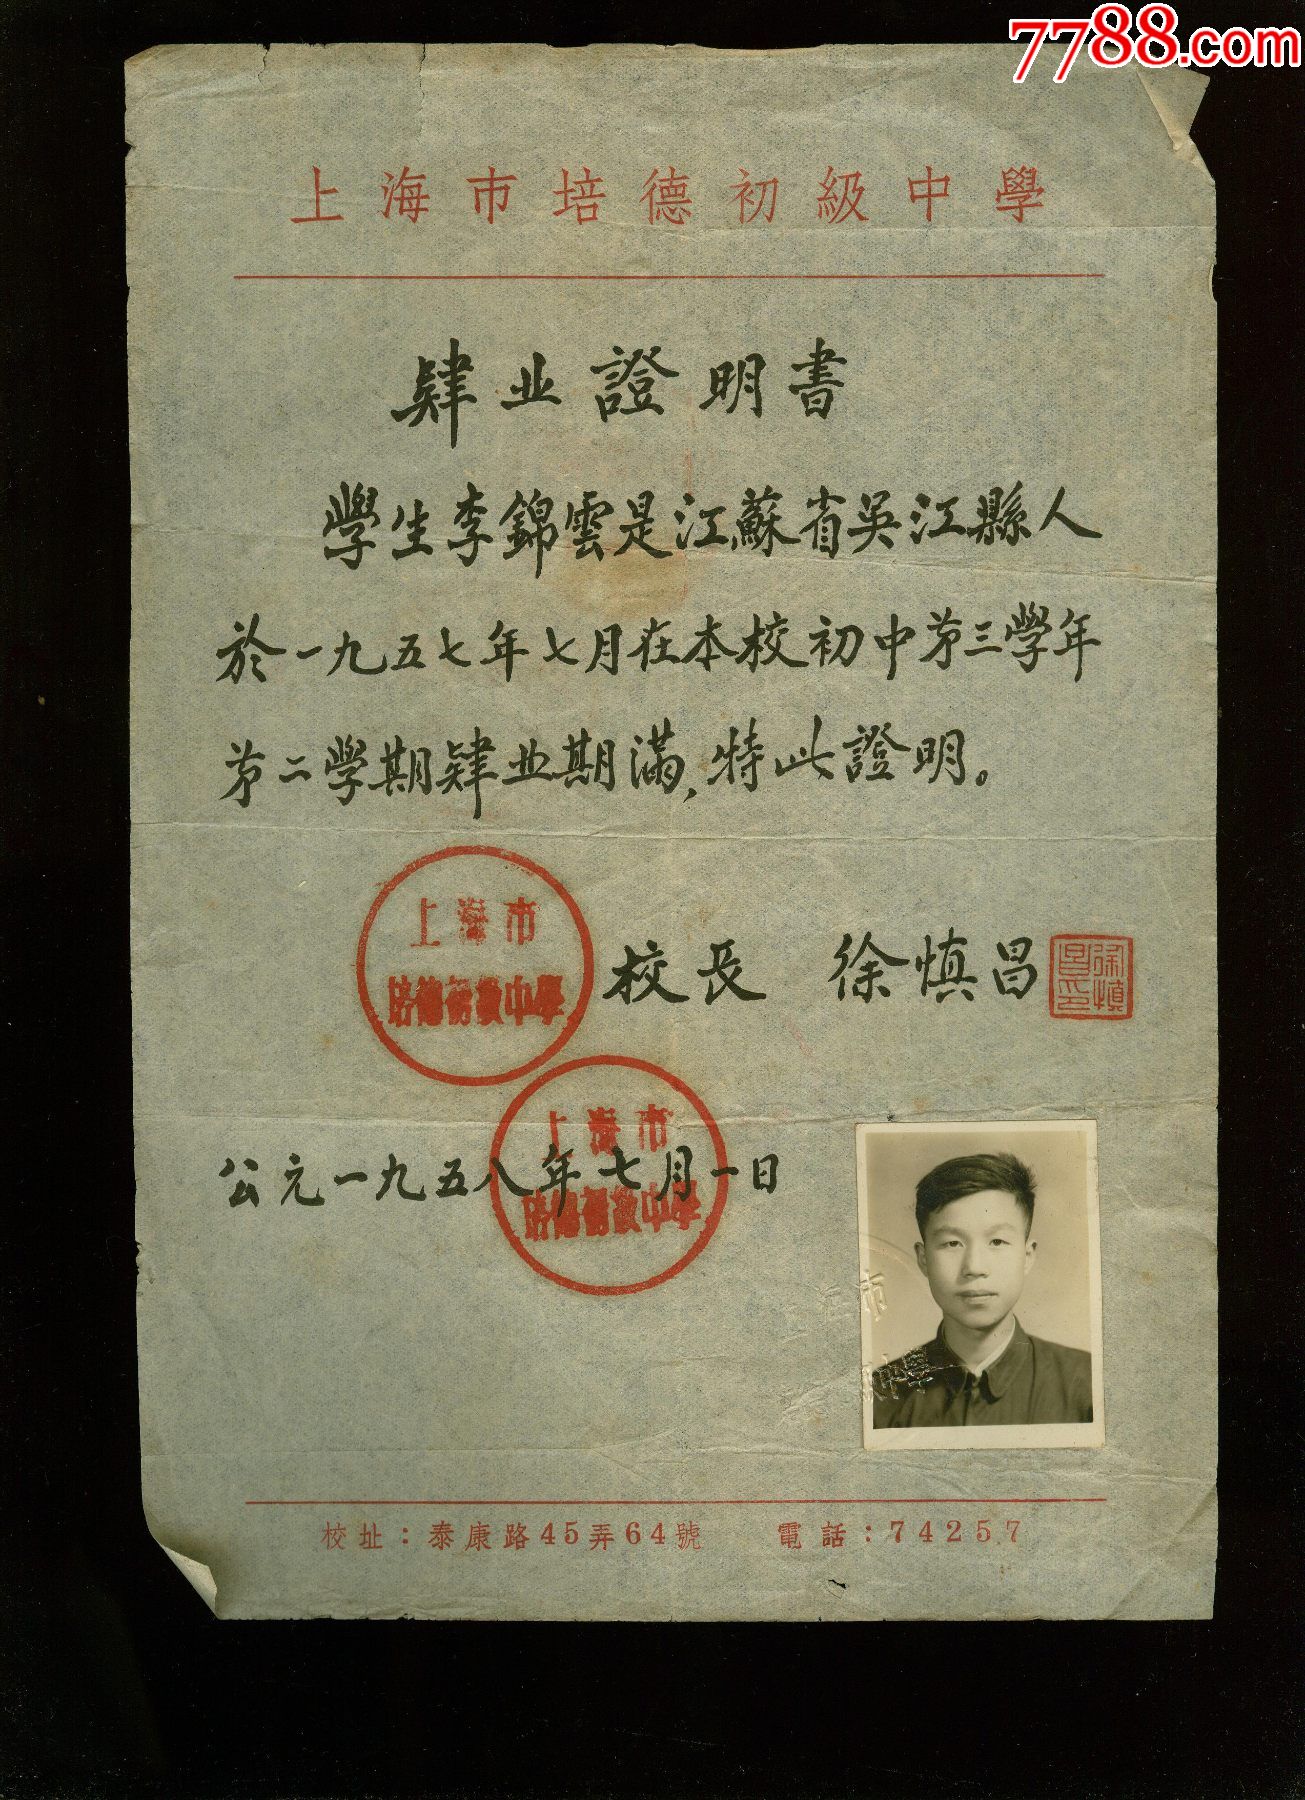 1958年上海培德初级中学校长徐慎昌毛笔手写肄业证明书